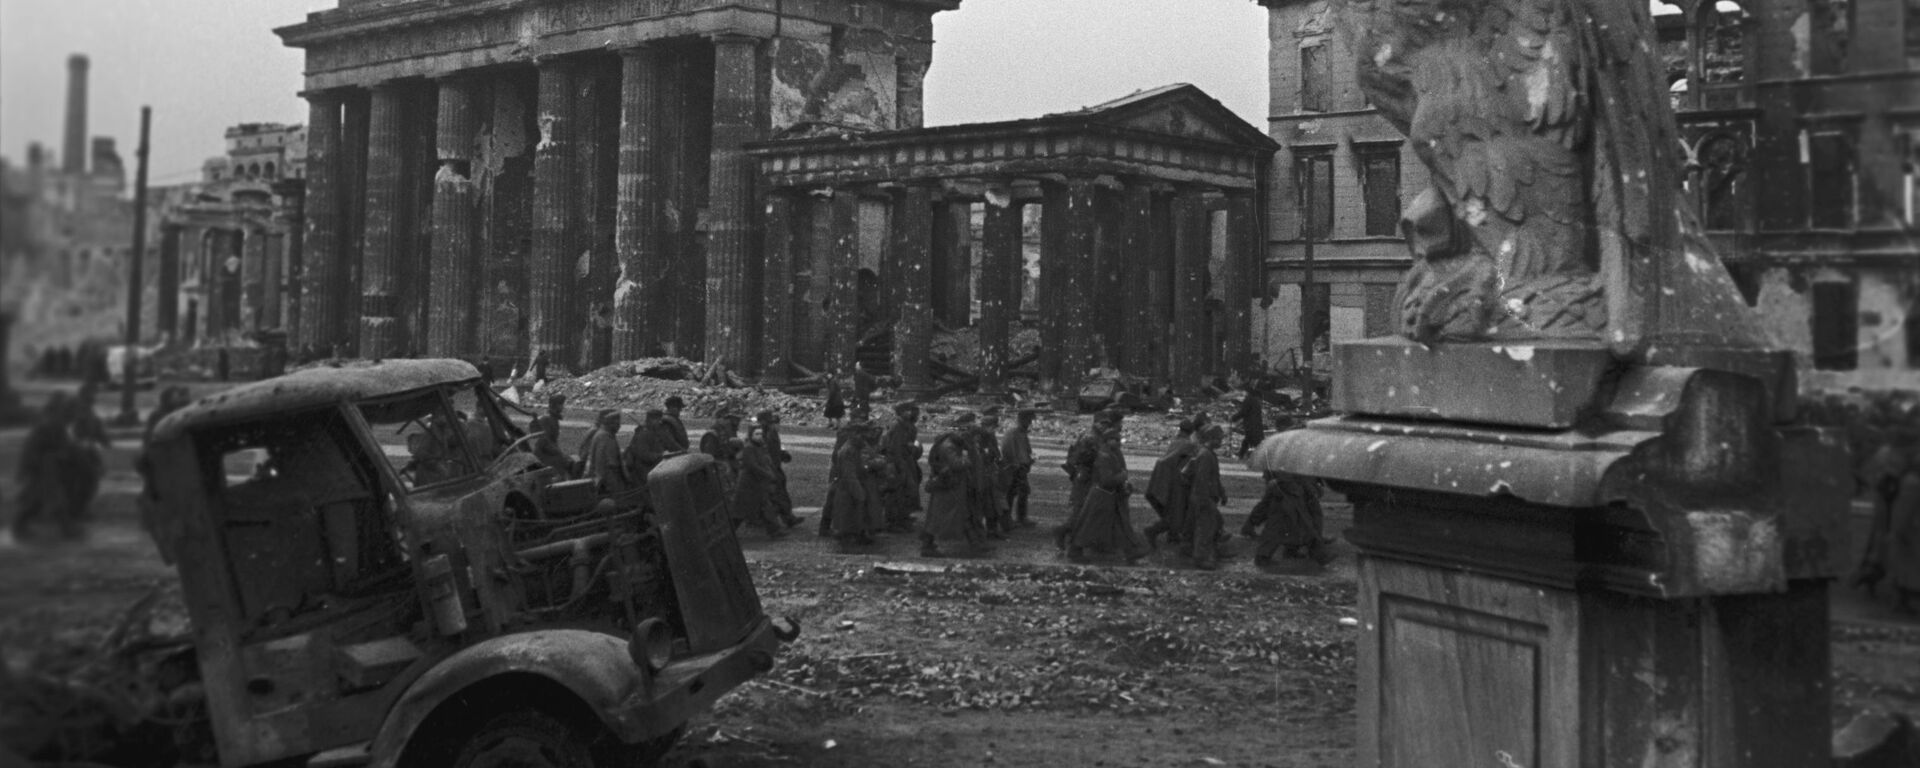 Kolona zarobljenih nemačkih vojnika kod Brandenburške kapije u Berlinu - Sputnik Srbija, 1920, 18.04.2020